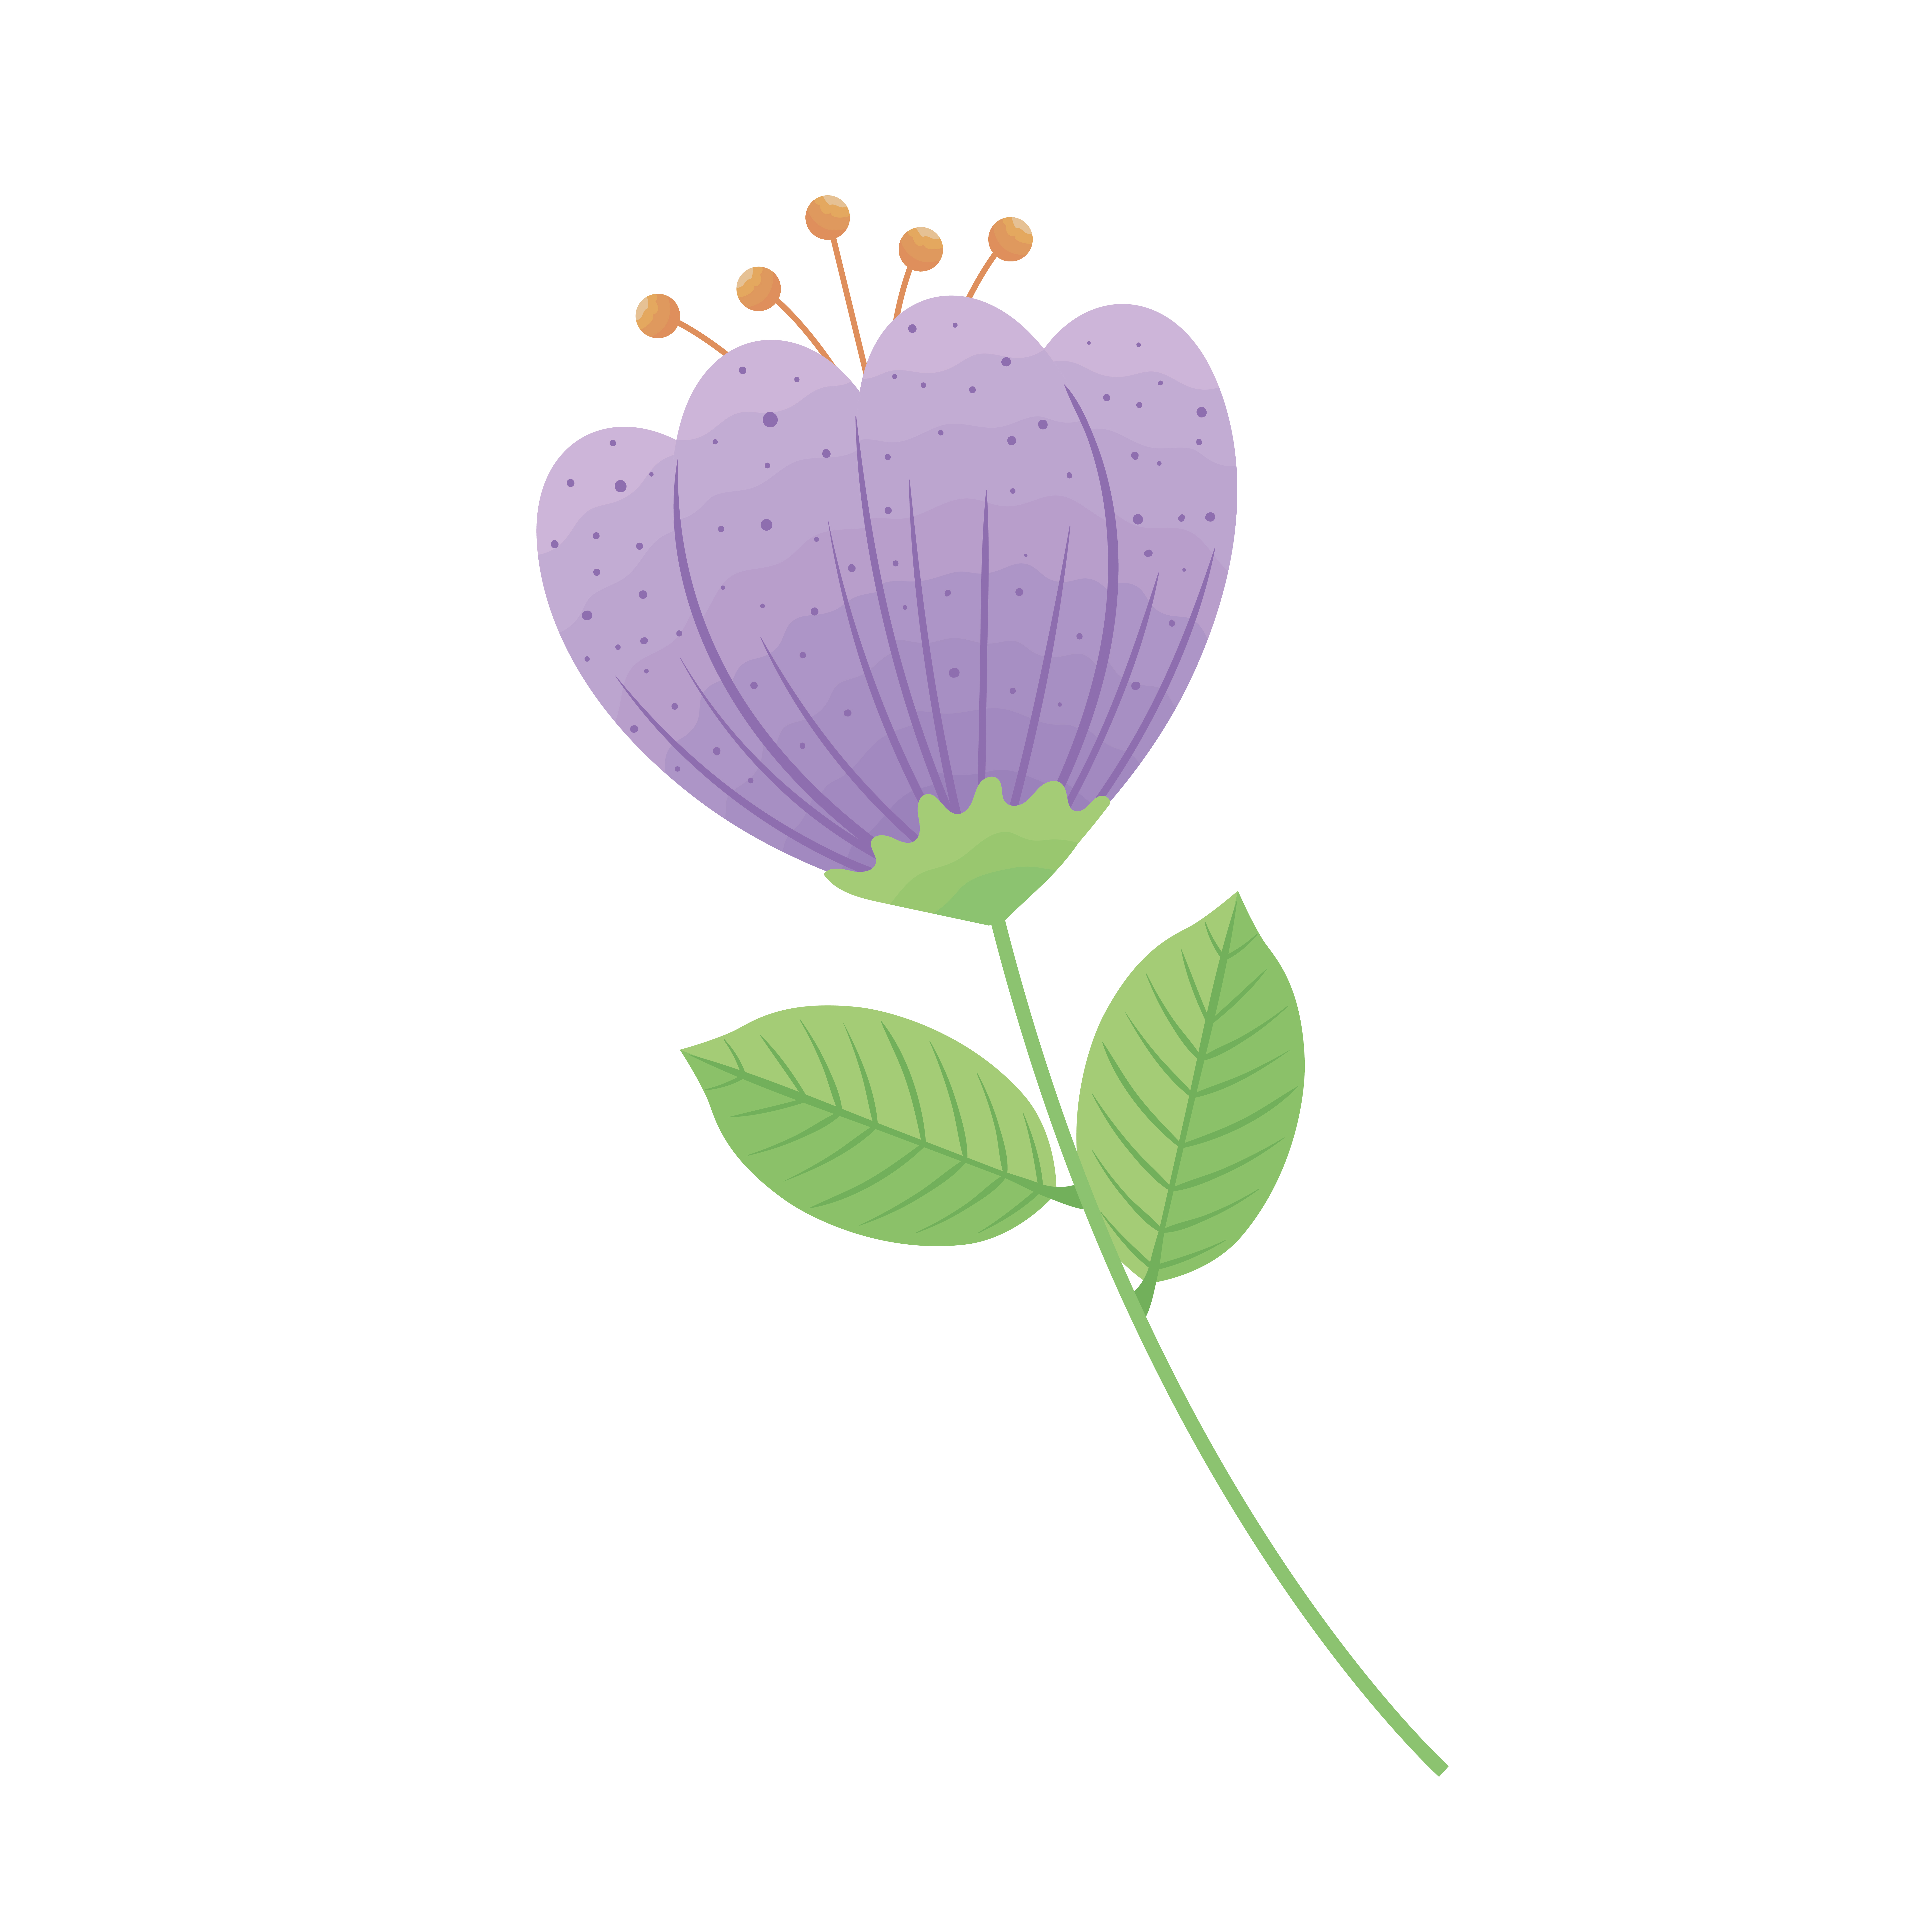 fleur couleur lilas 2696166 - Telecharger Vectoriel Gratuit, Clipart  Graphique, Vecteur Dessins et Pictogramme Gratuit